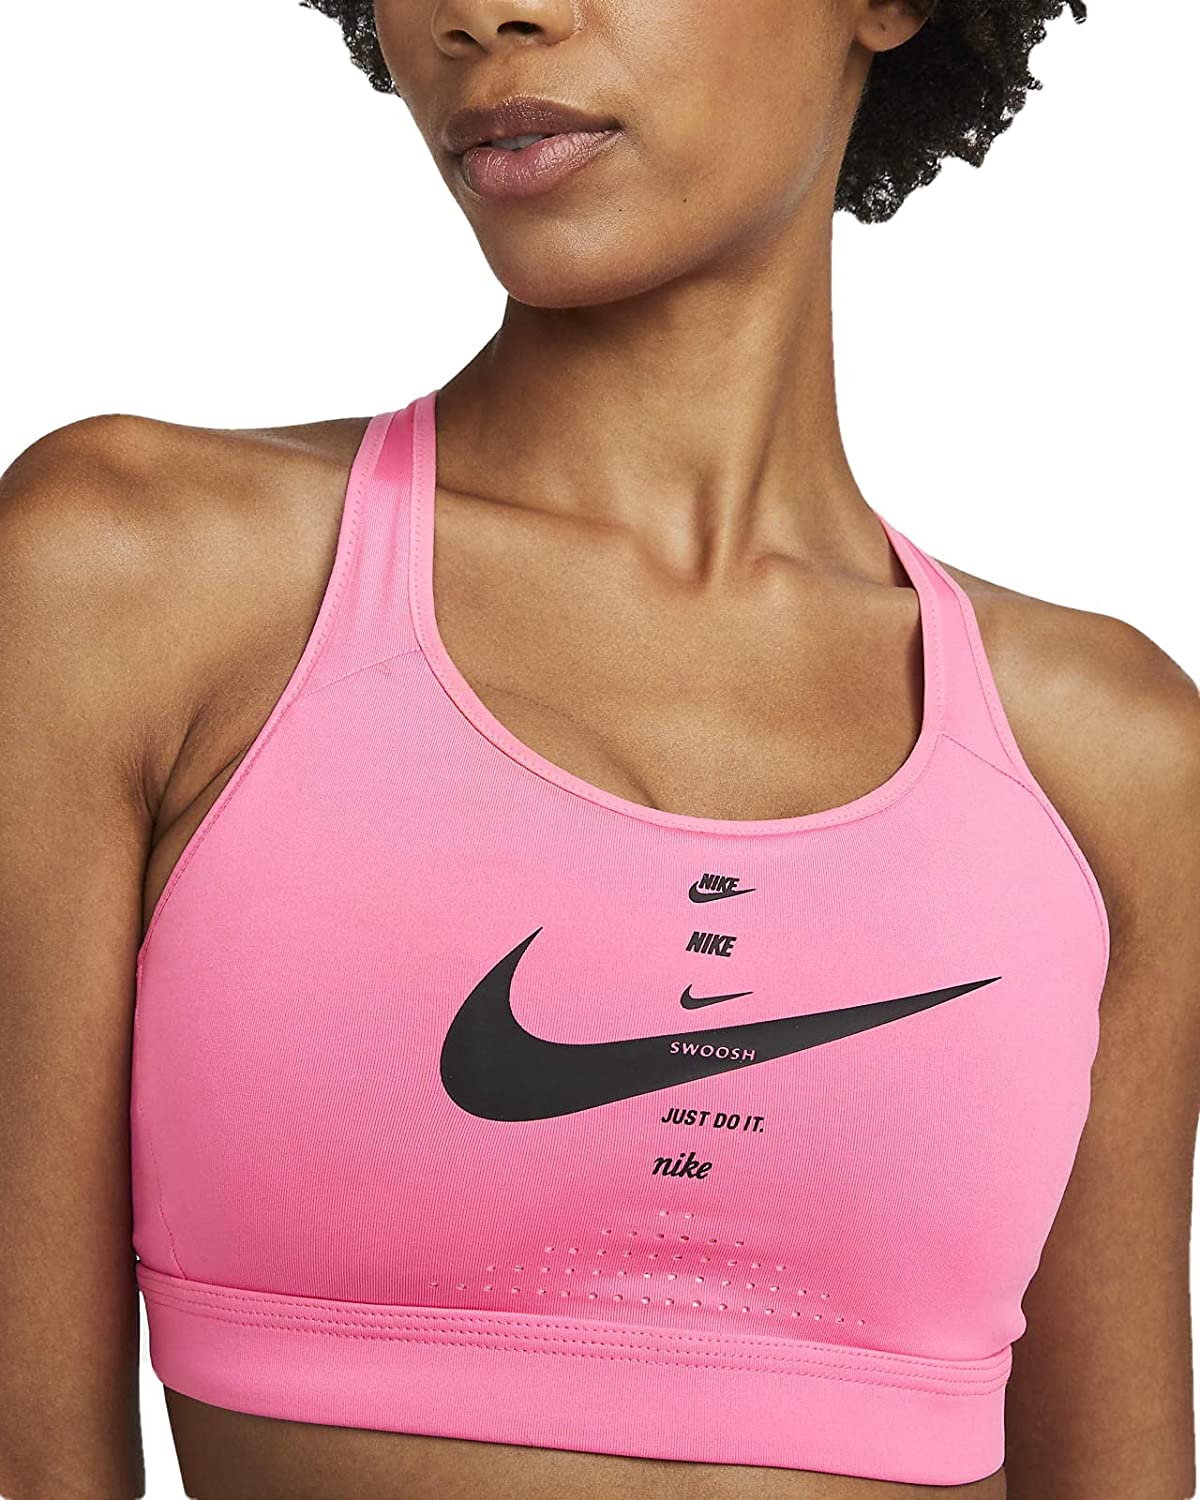 Nike Women's Sports Bras 100% Nylon Flyknit High Support AJ4047